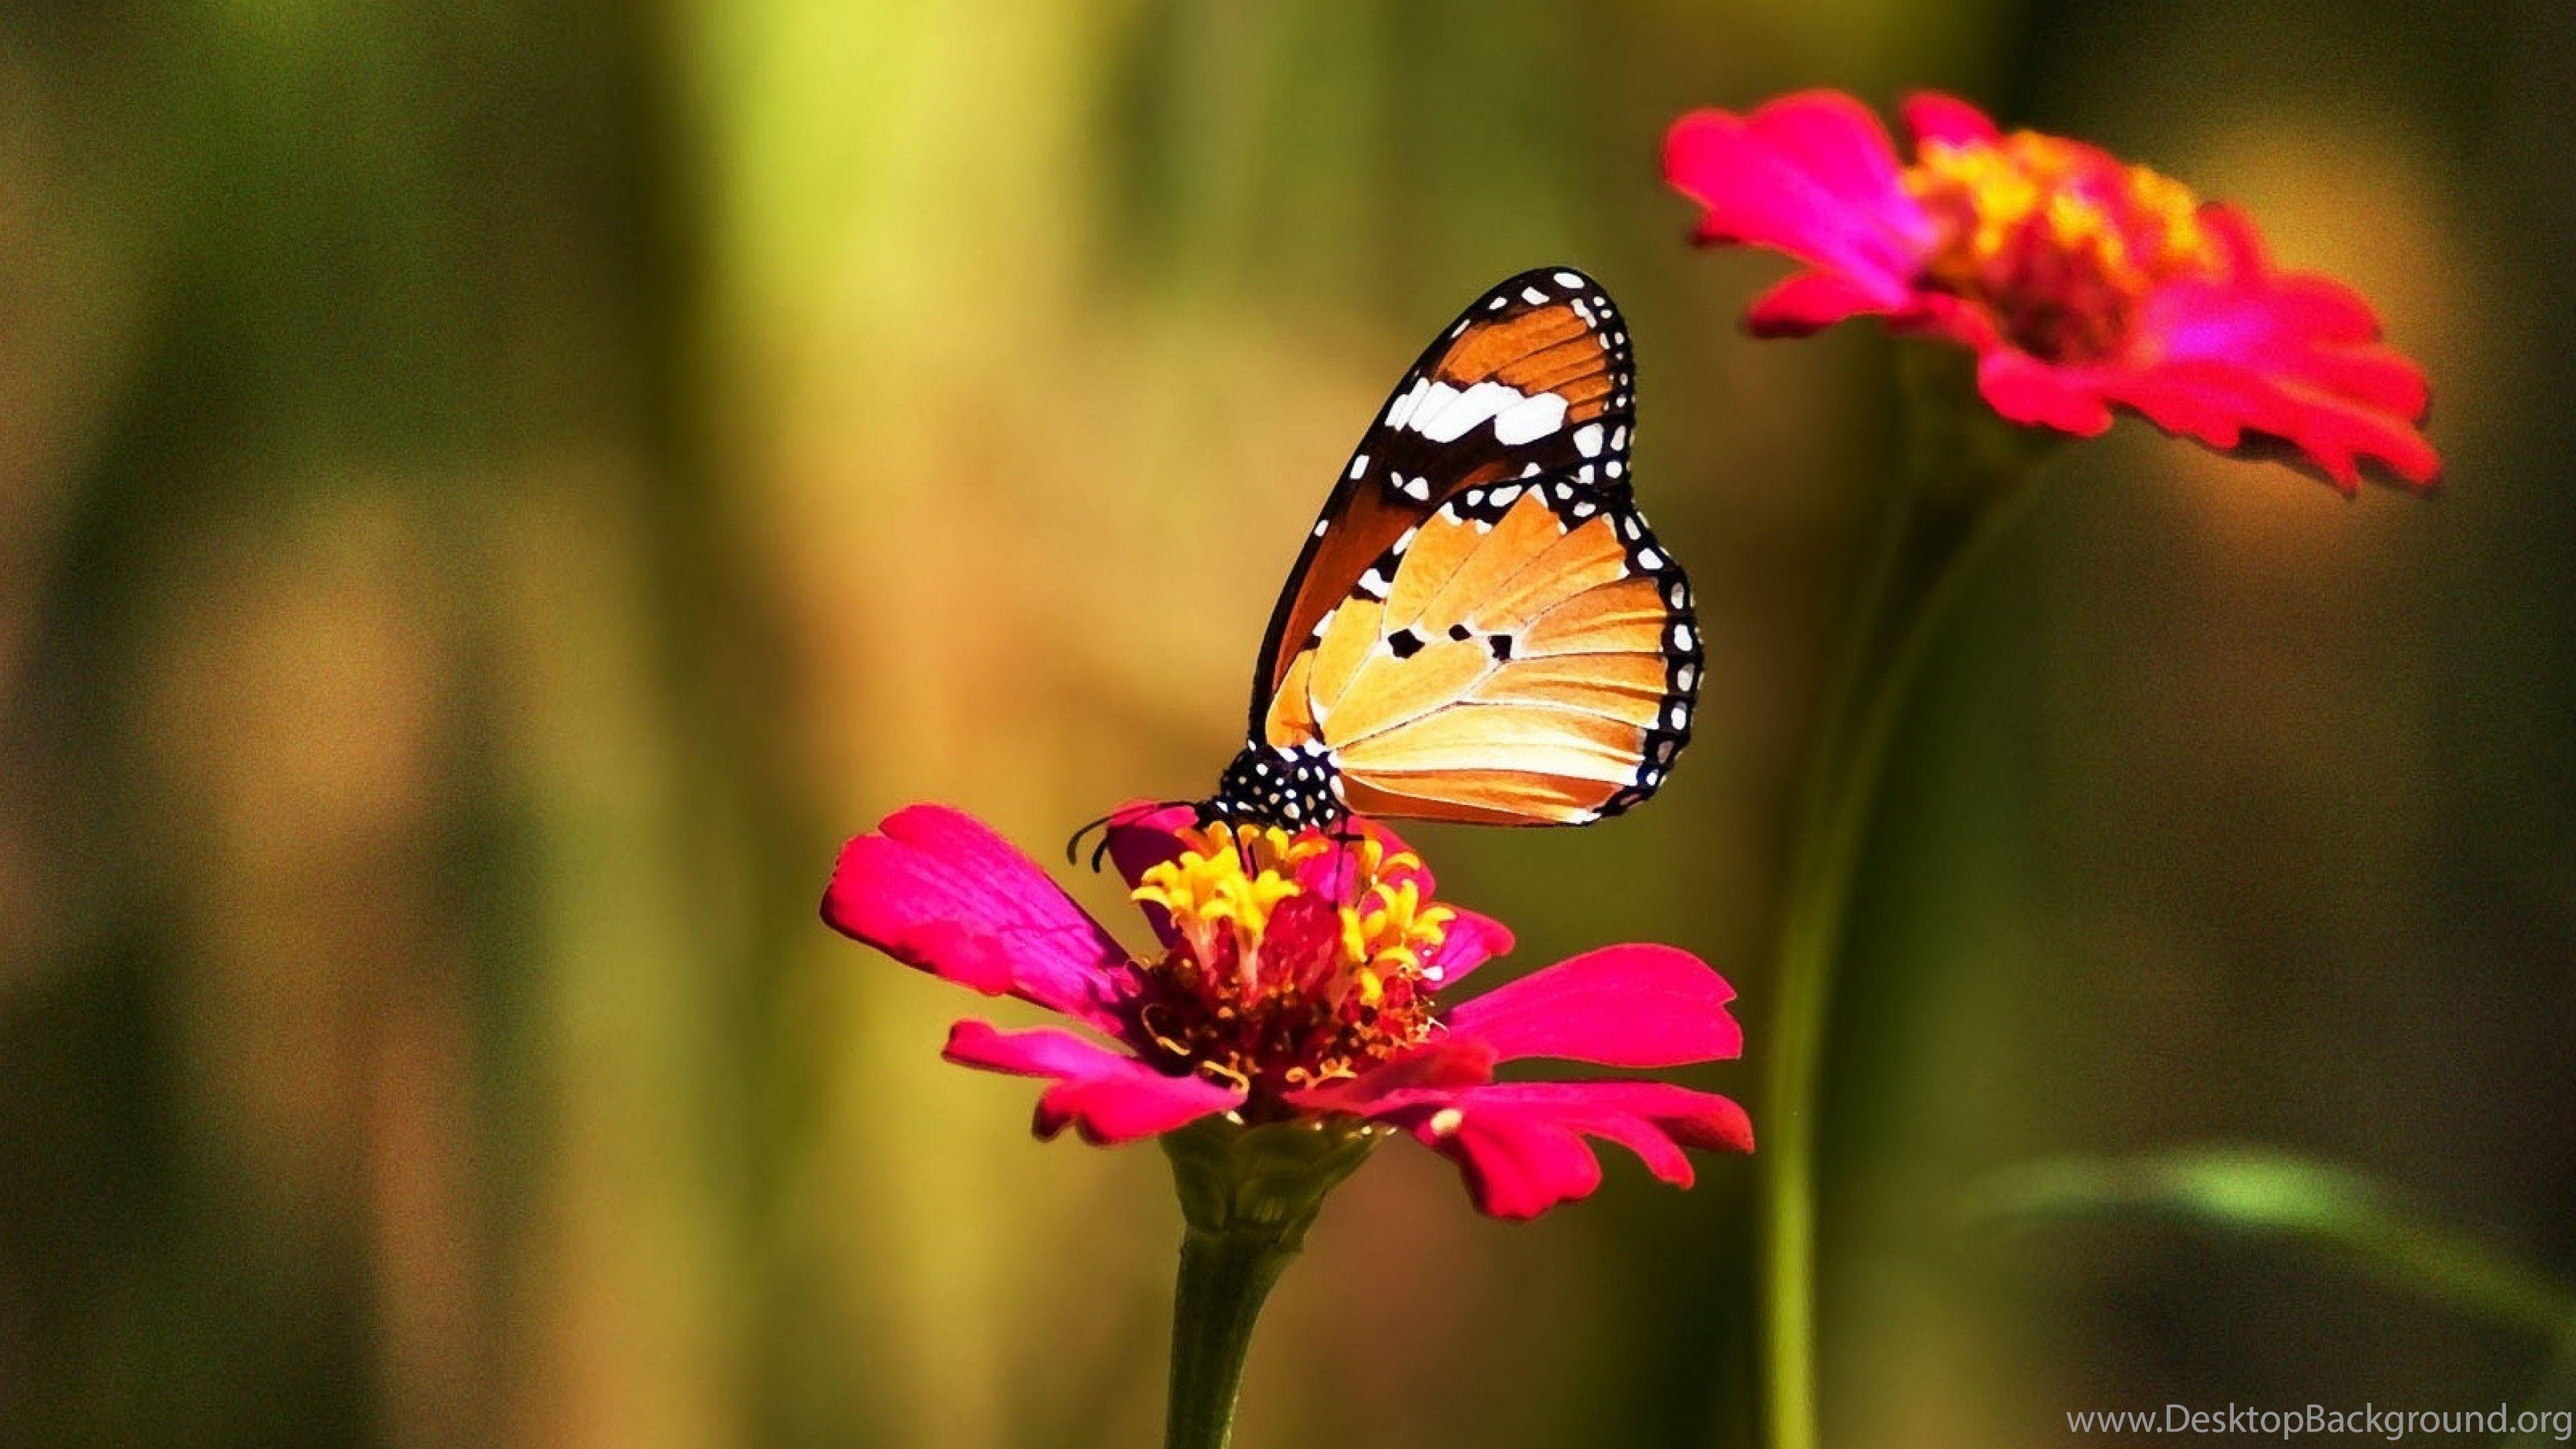 Beautiful Butterfly And Flower 4K Wallpapers HD For Desktop Desktop